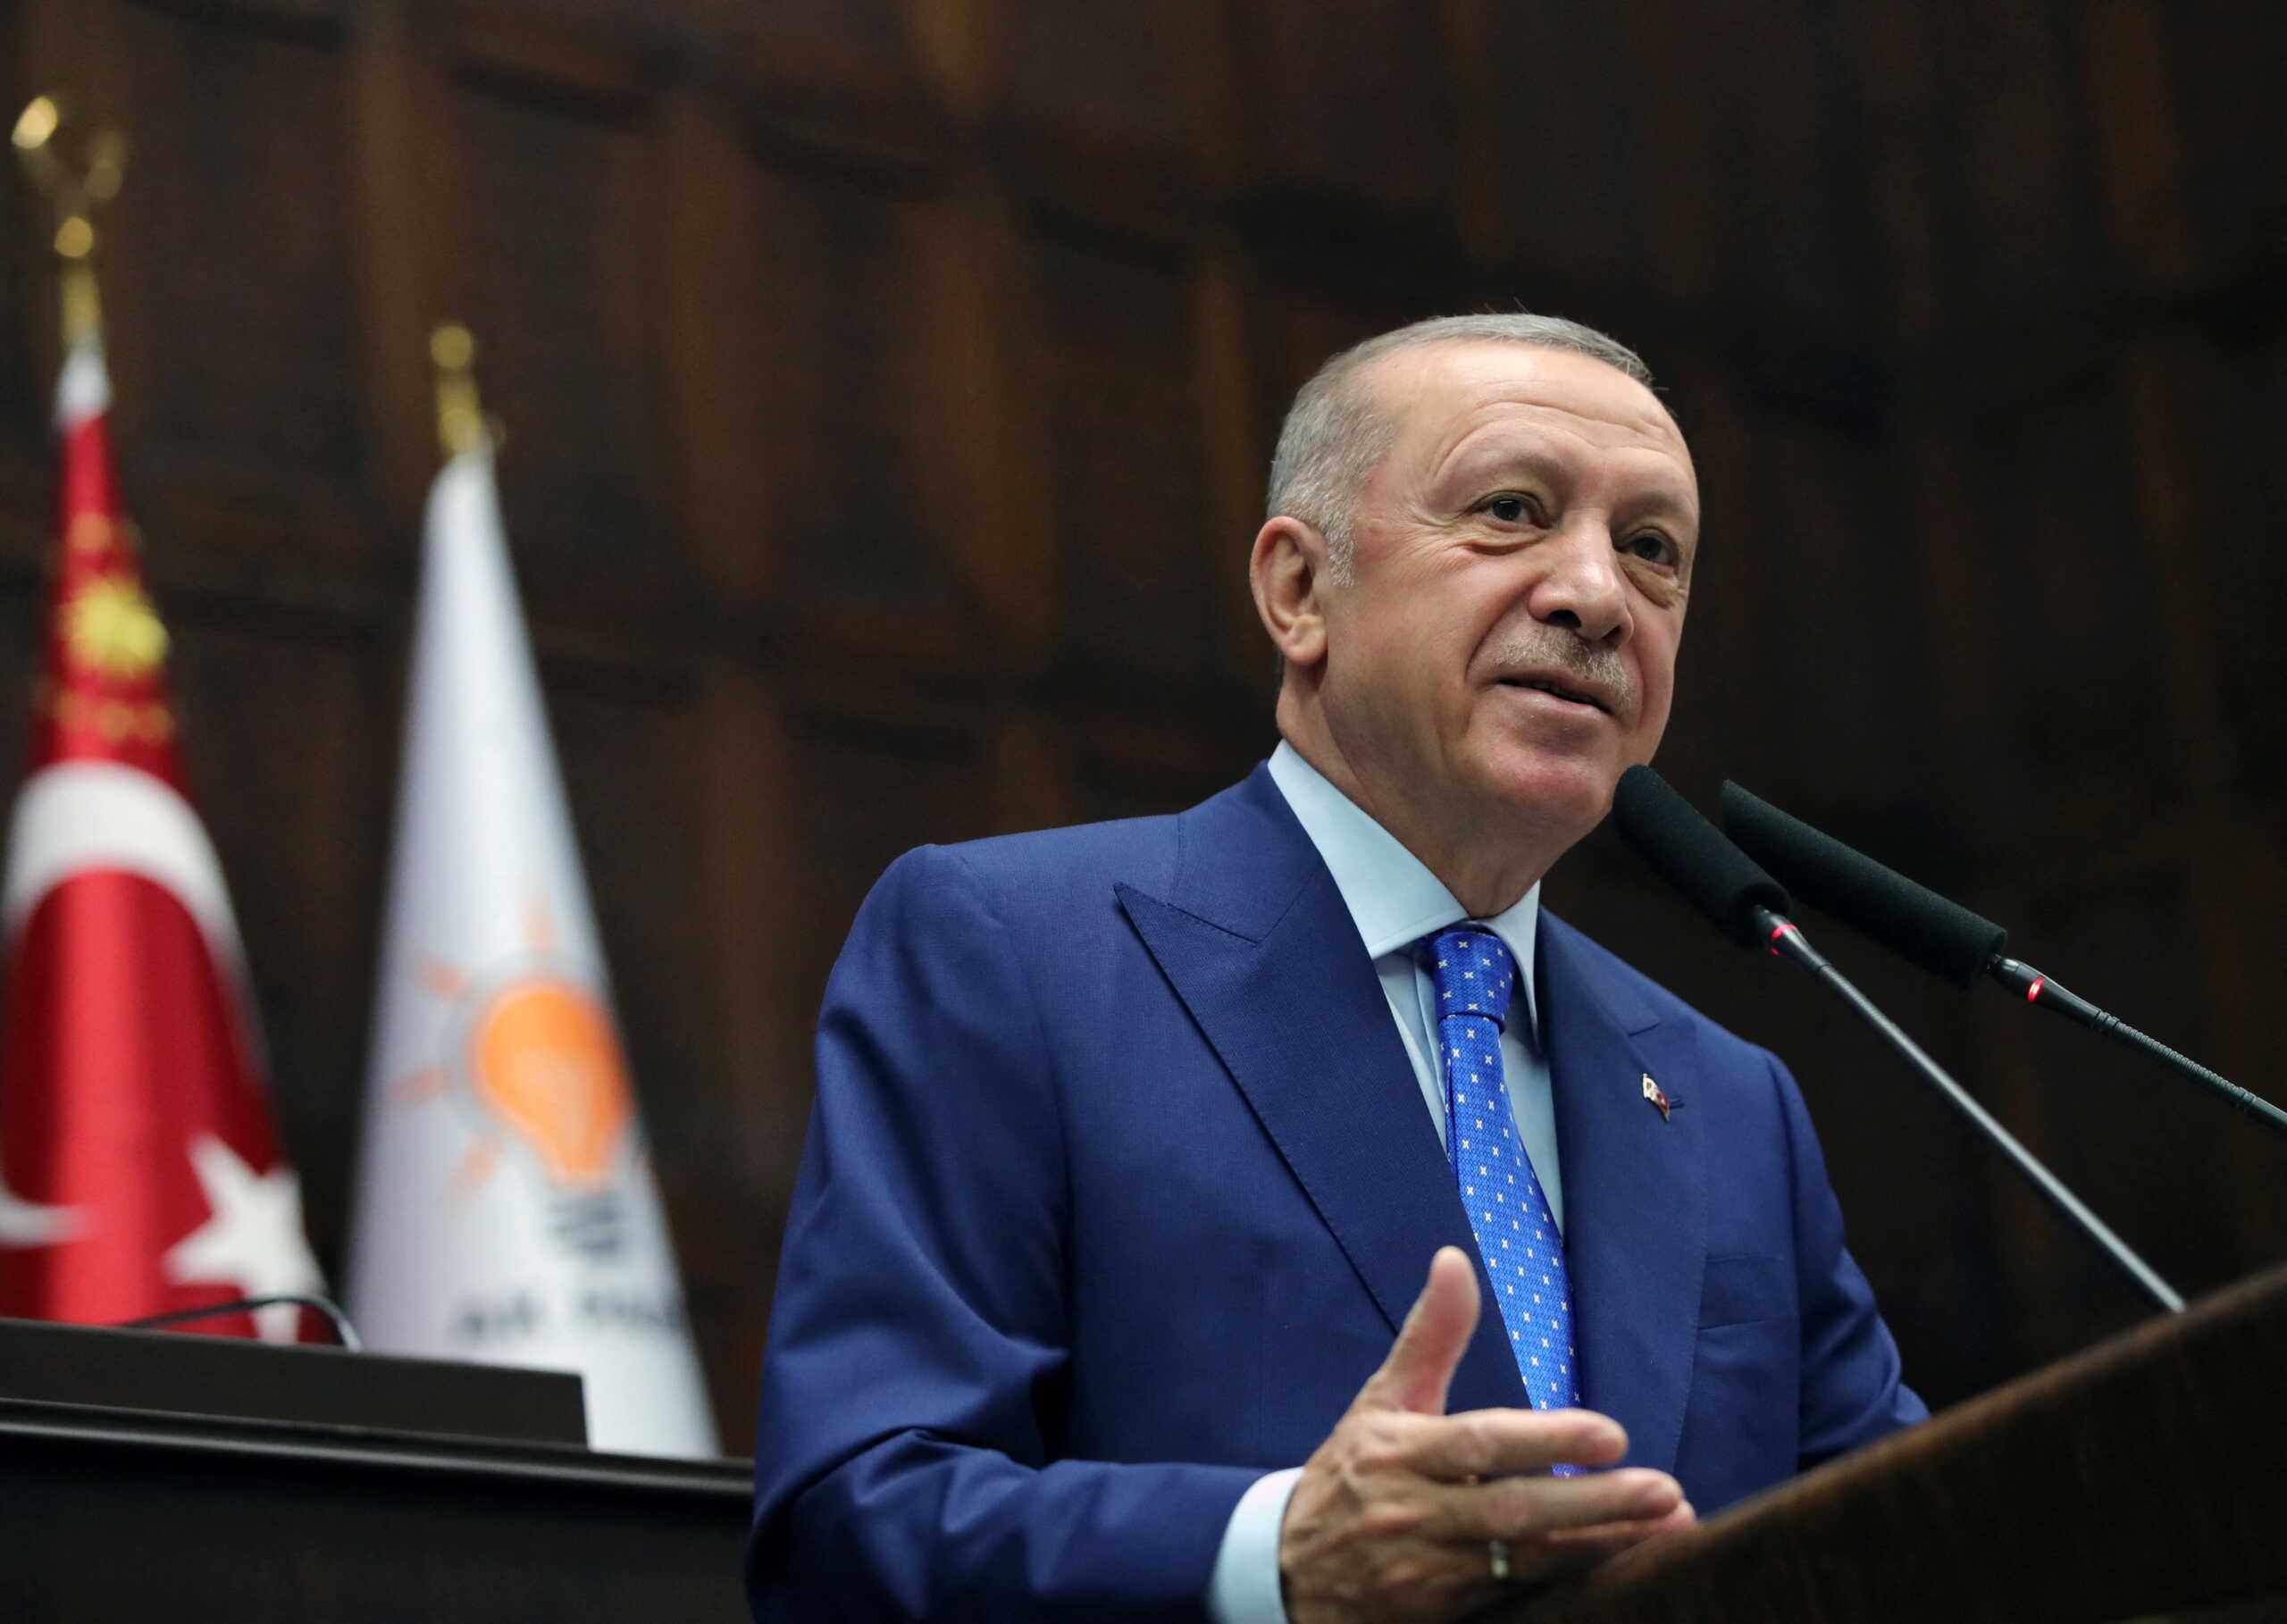 Σε εγρήγορση η κυβέρνηση μετά τις δηλώσεις Ερντογάν – Οι πρώτες εκτιμήσεις και τα βήματα από εδώ και πέρα